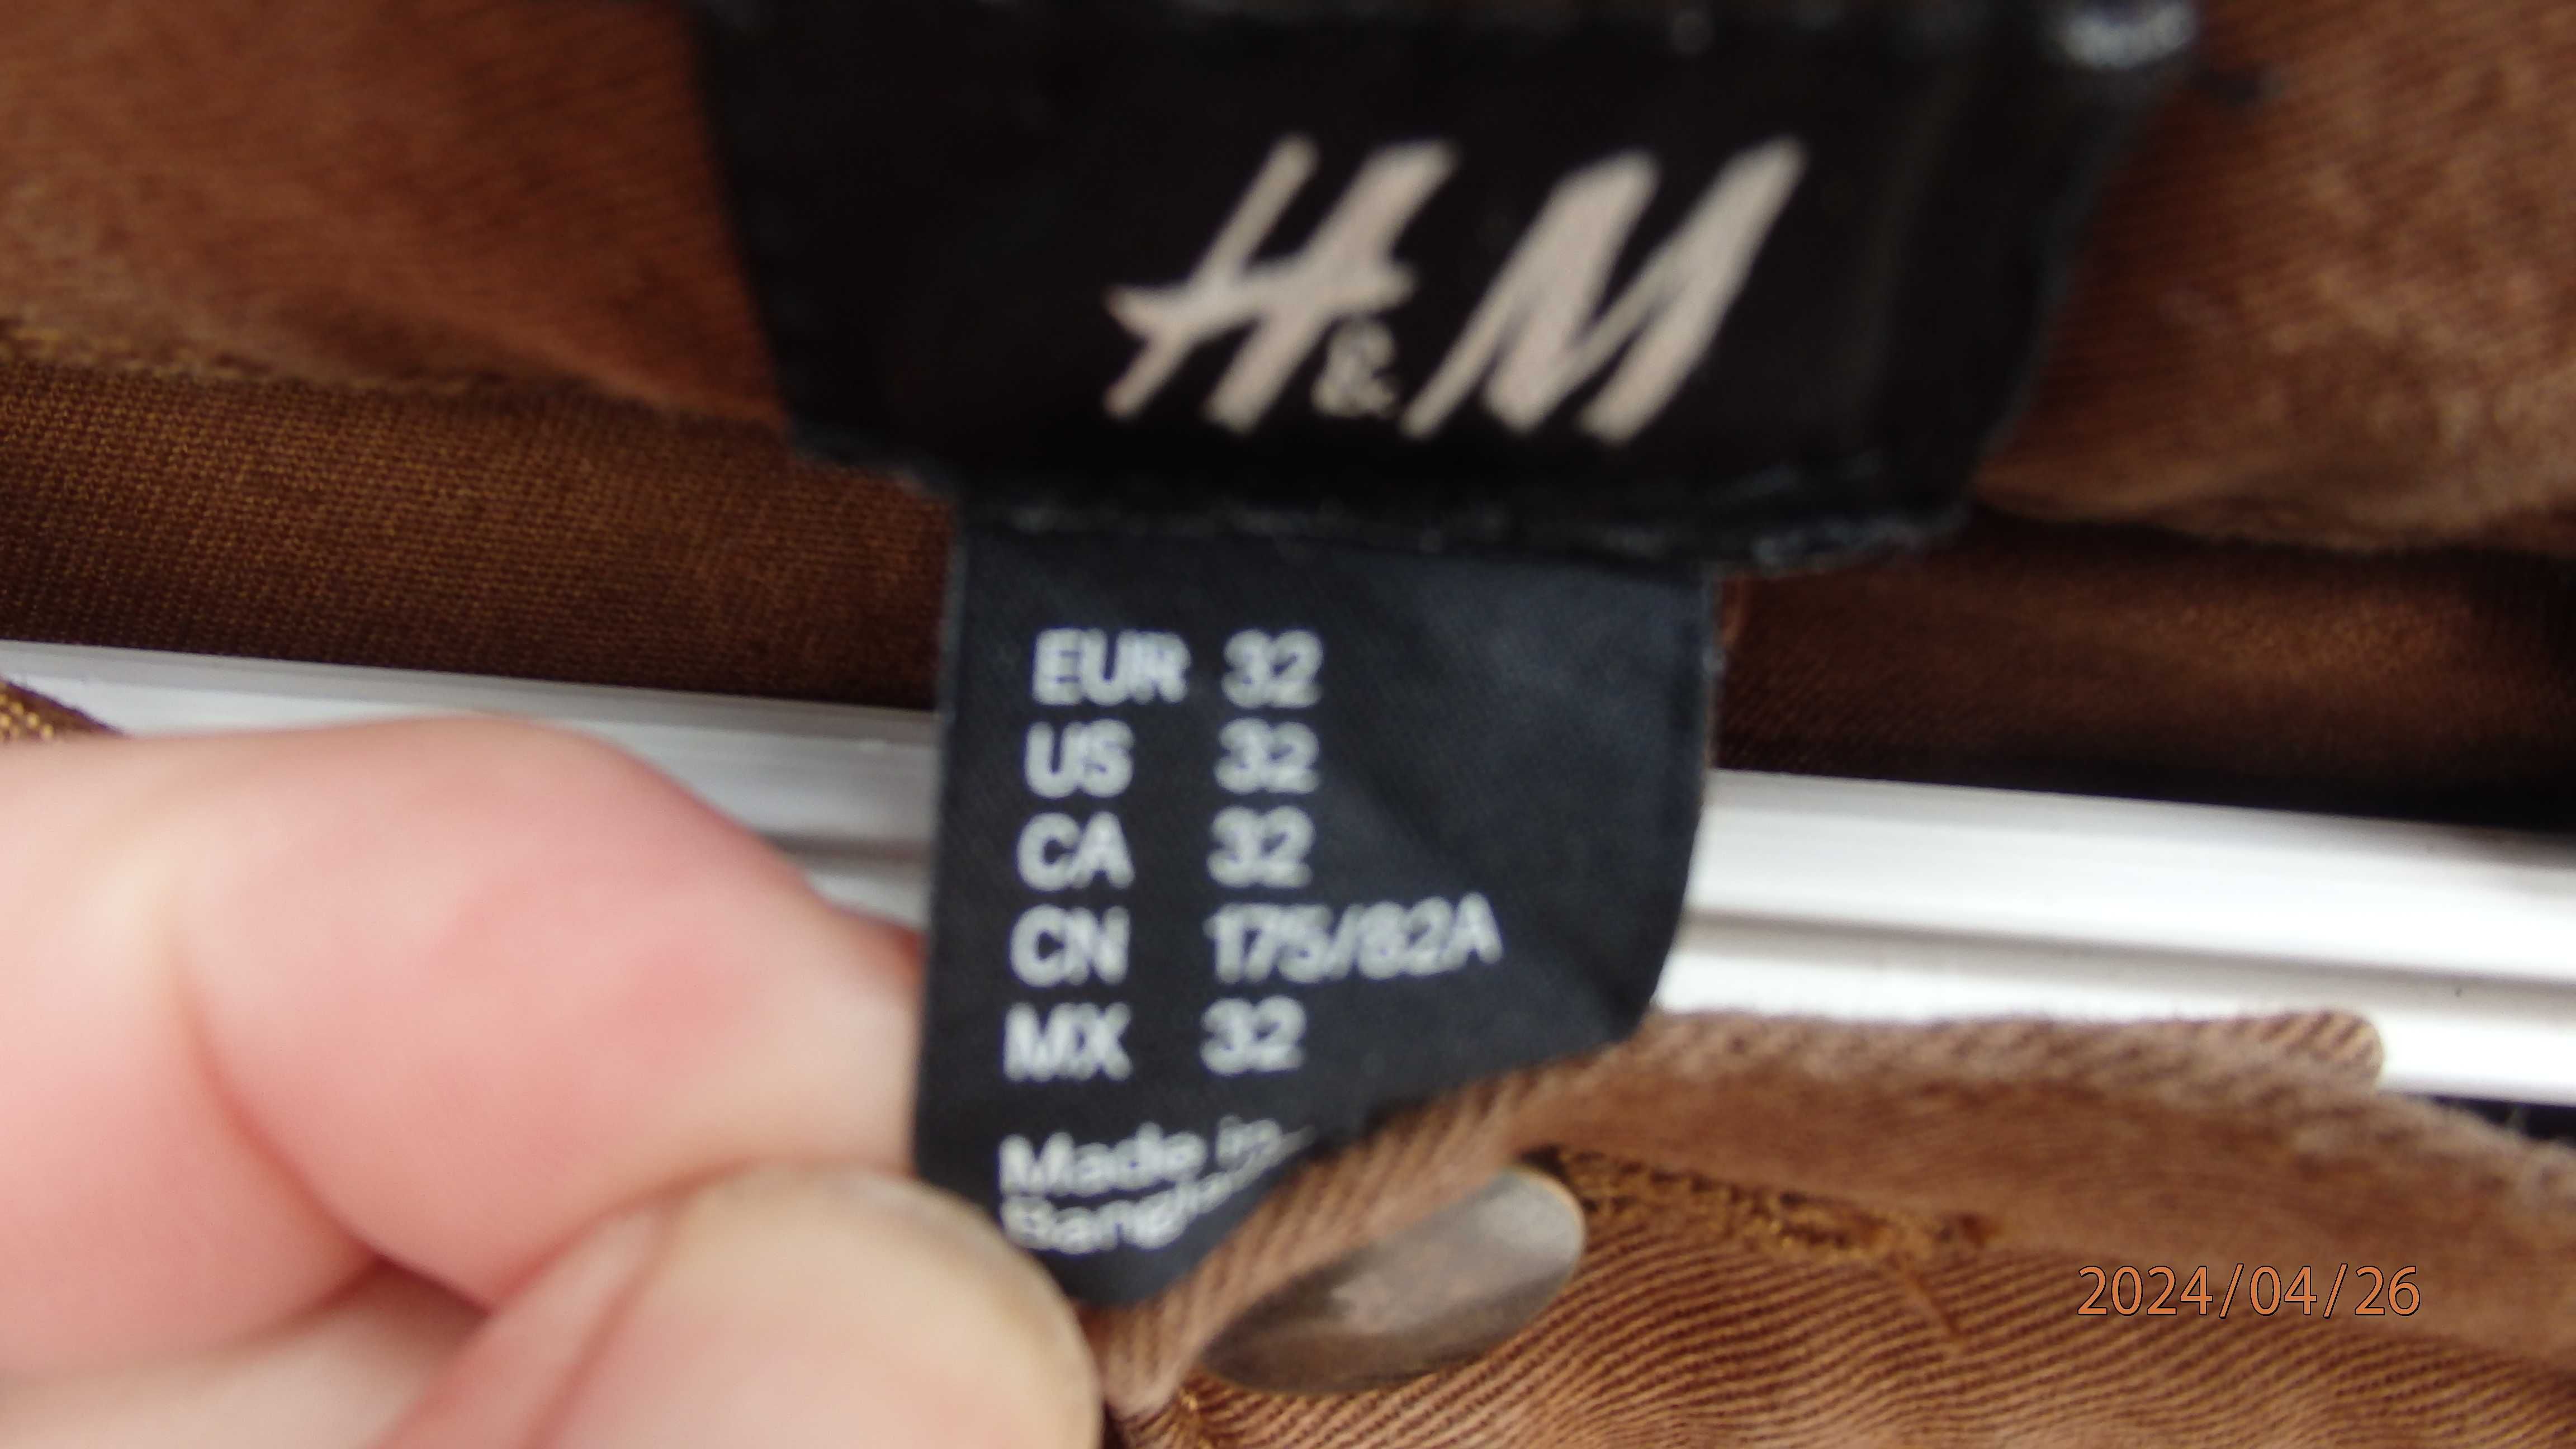 Spodnie męskie krótkie firmy H&M rozmiar EUR 32.